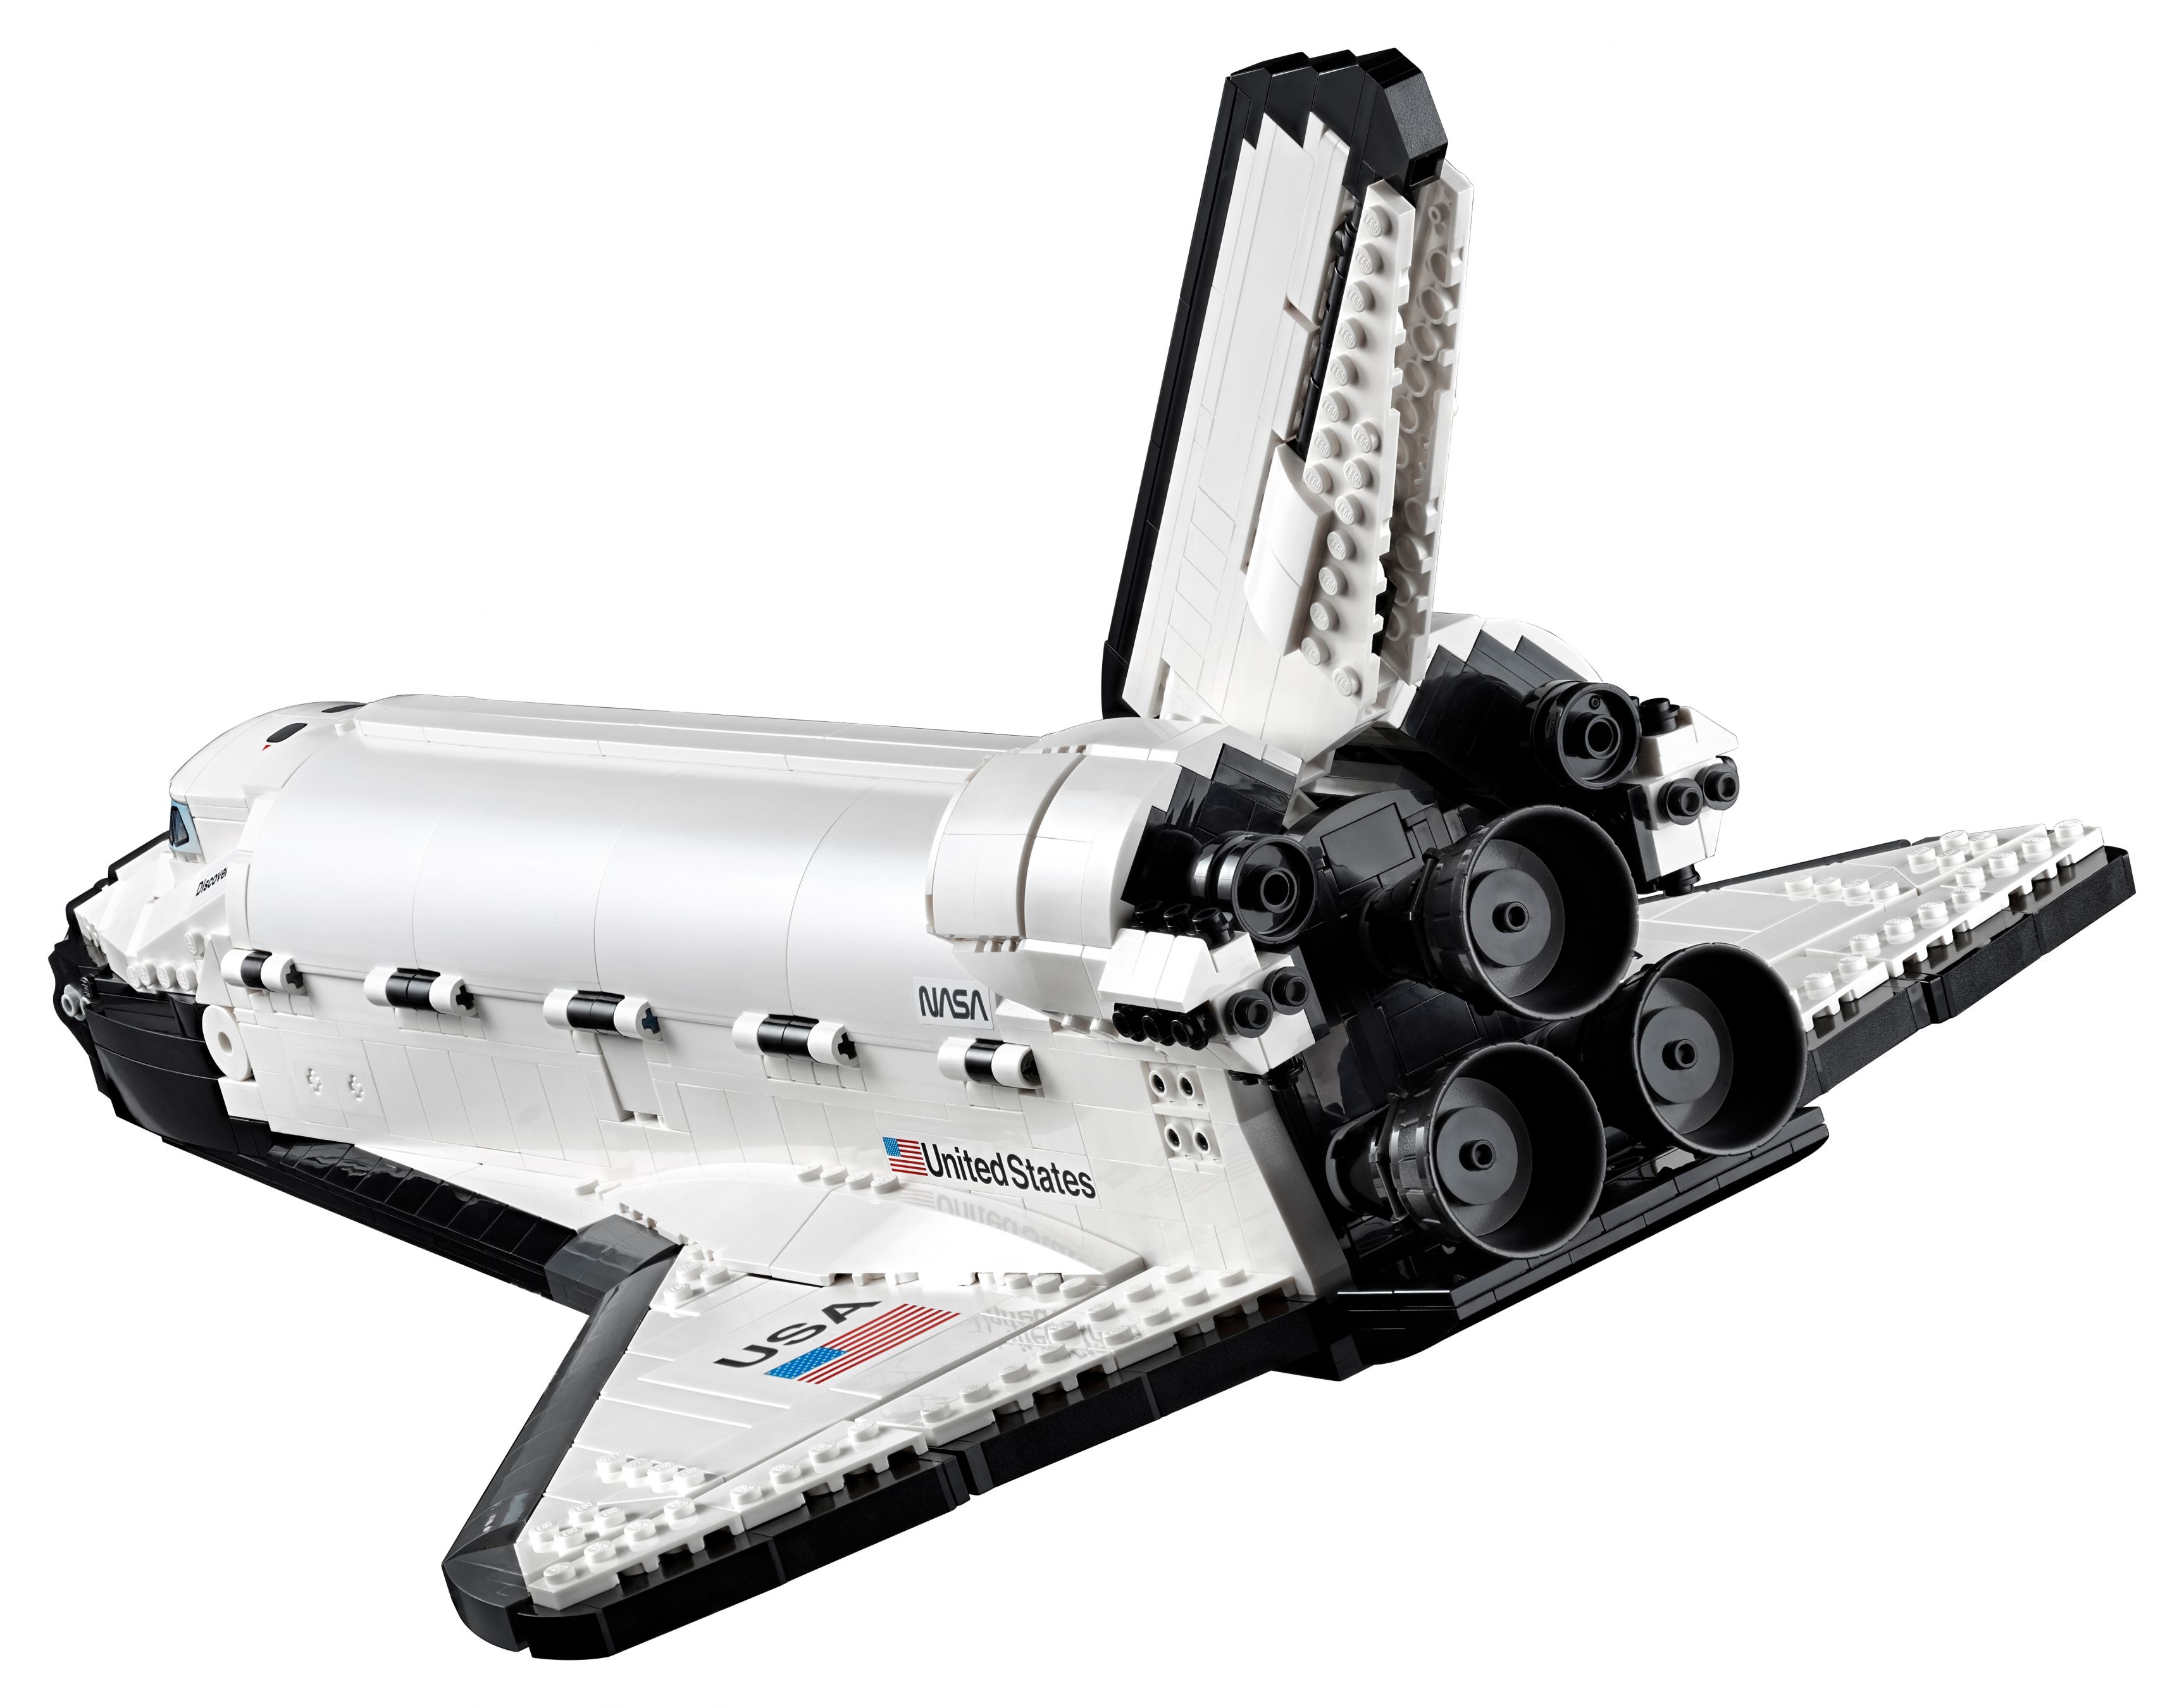 LEGO Advanced Models 10283 NASA-Spaceshuttle „Discovery“ LEGO_10283_alt12.jpg